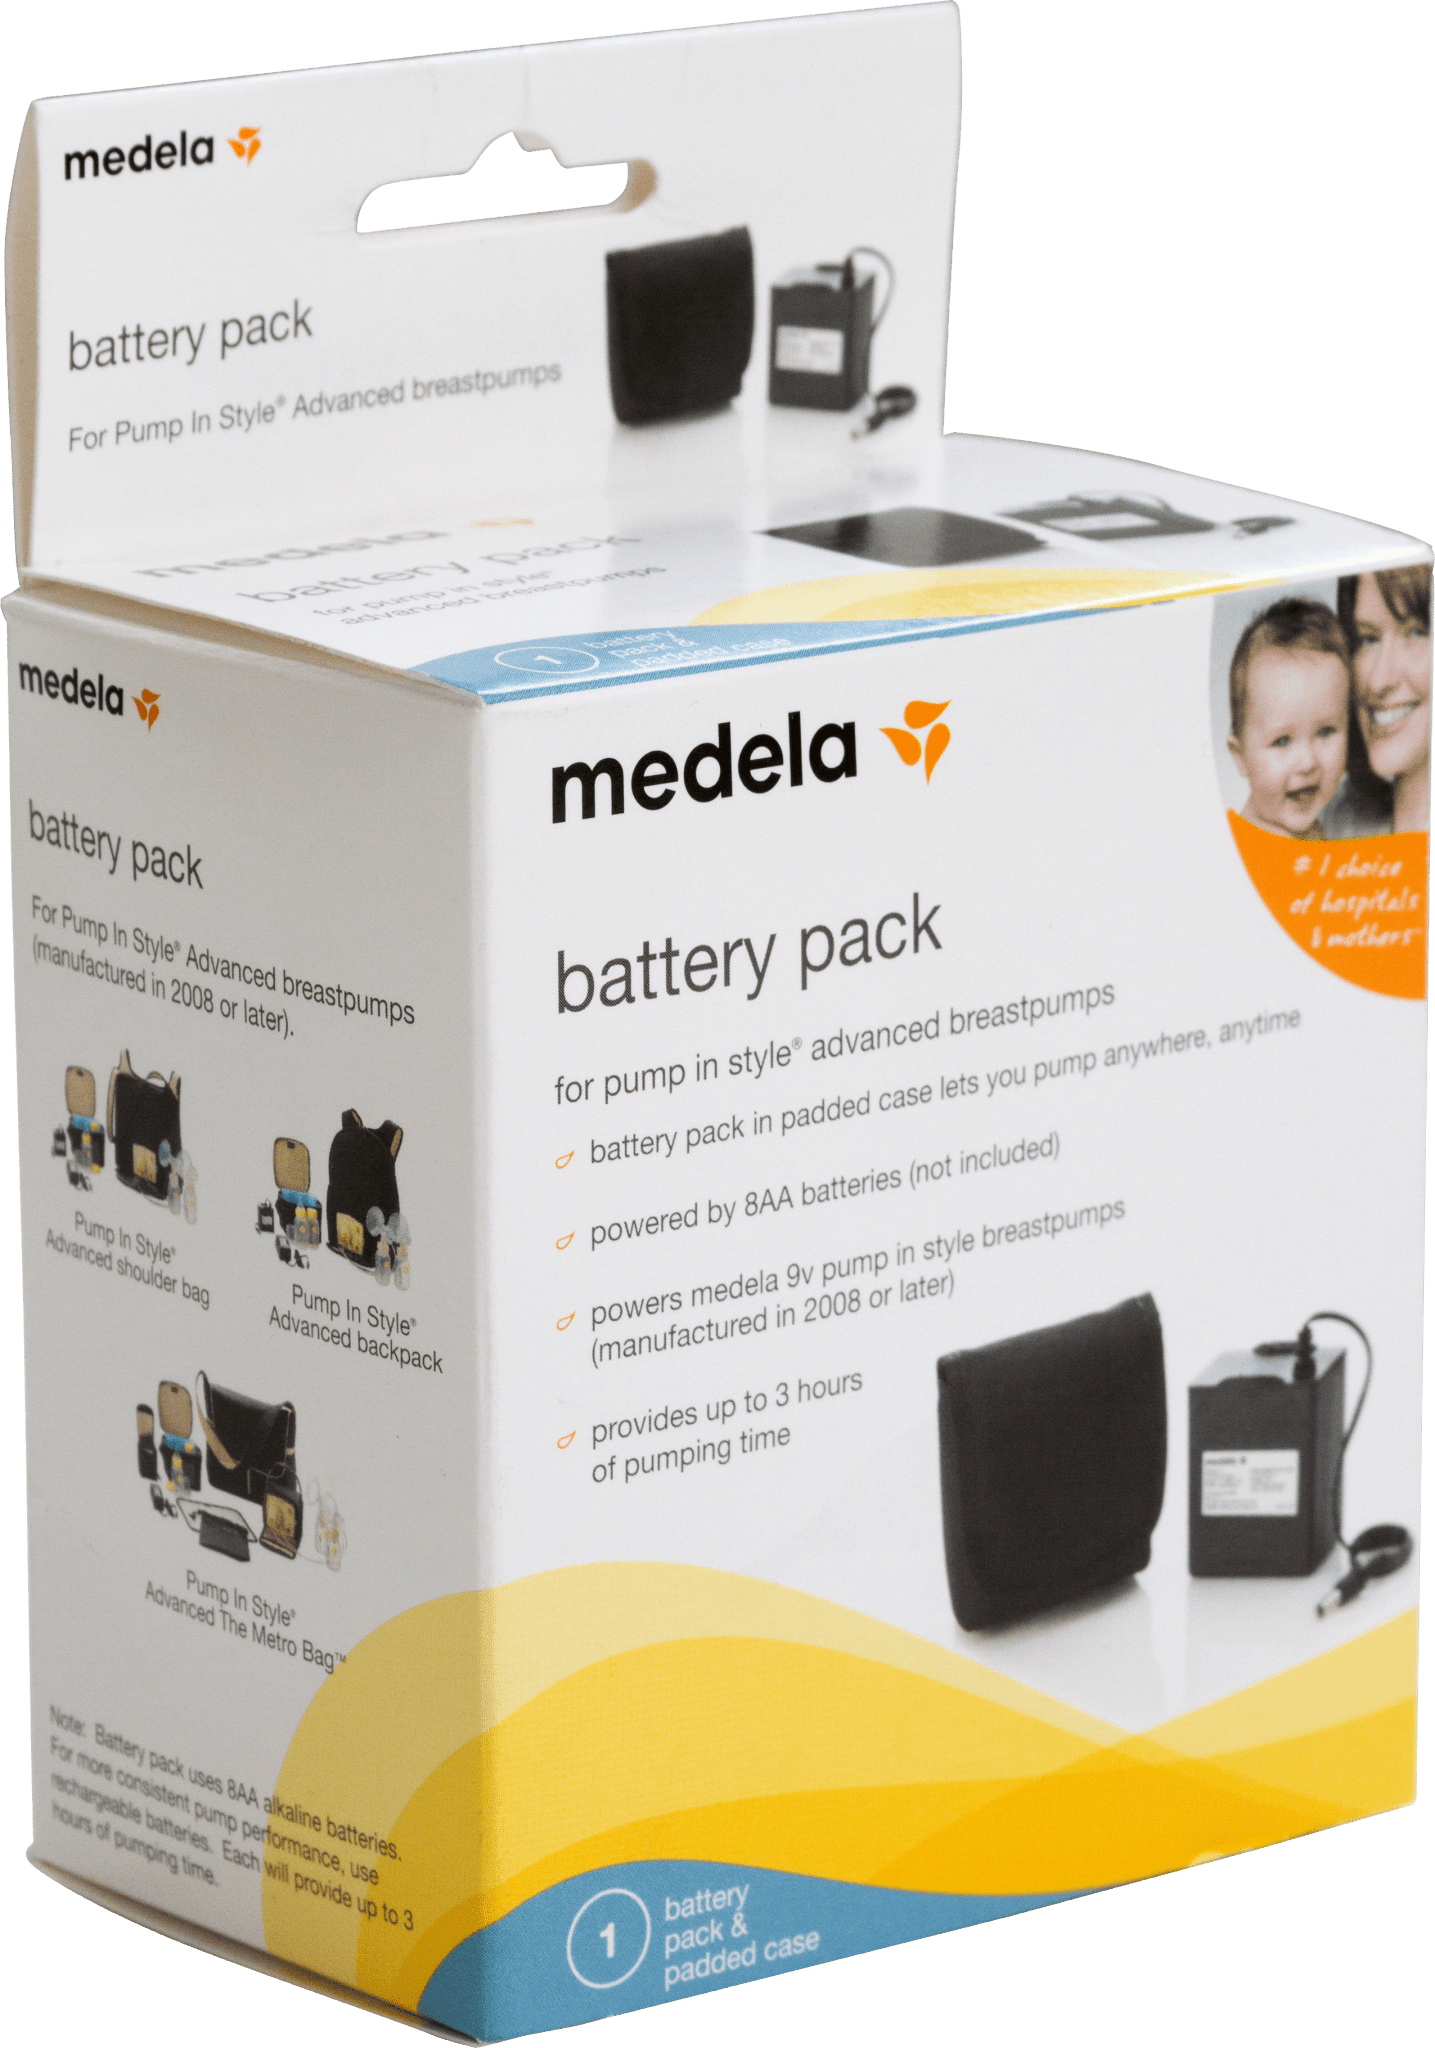 EA/1 - Medela Pump In Style Battery Pack - Best Buy Medical Supplies